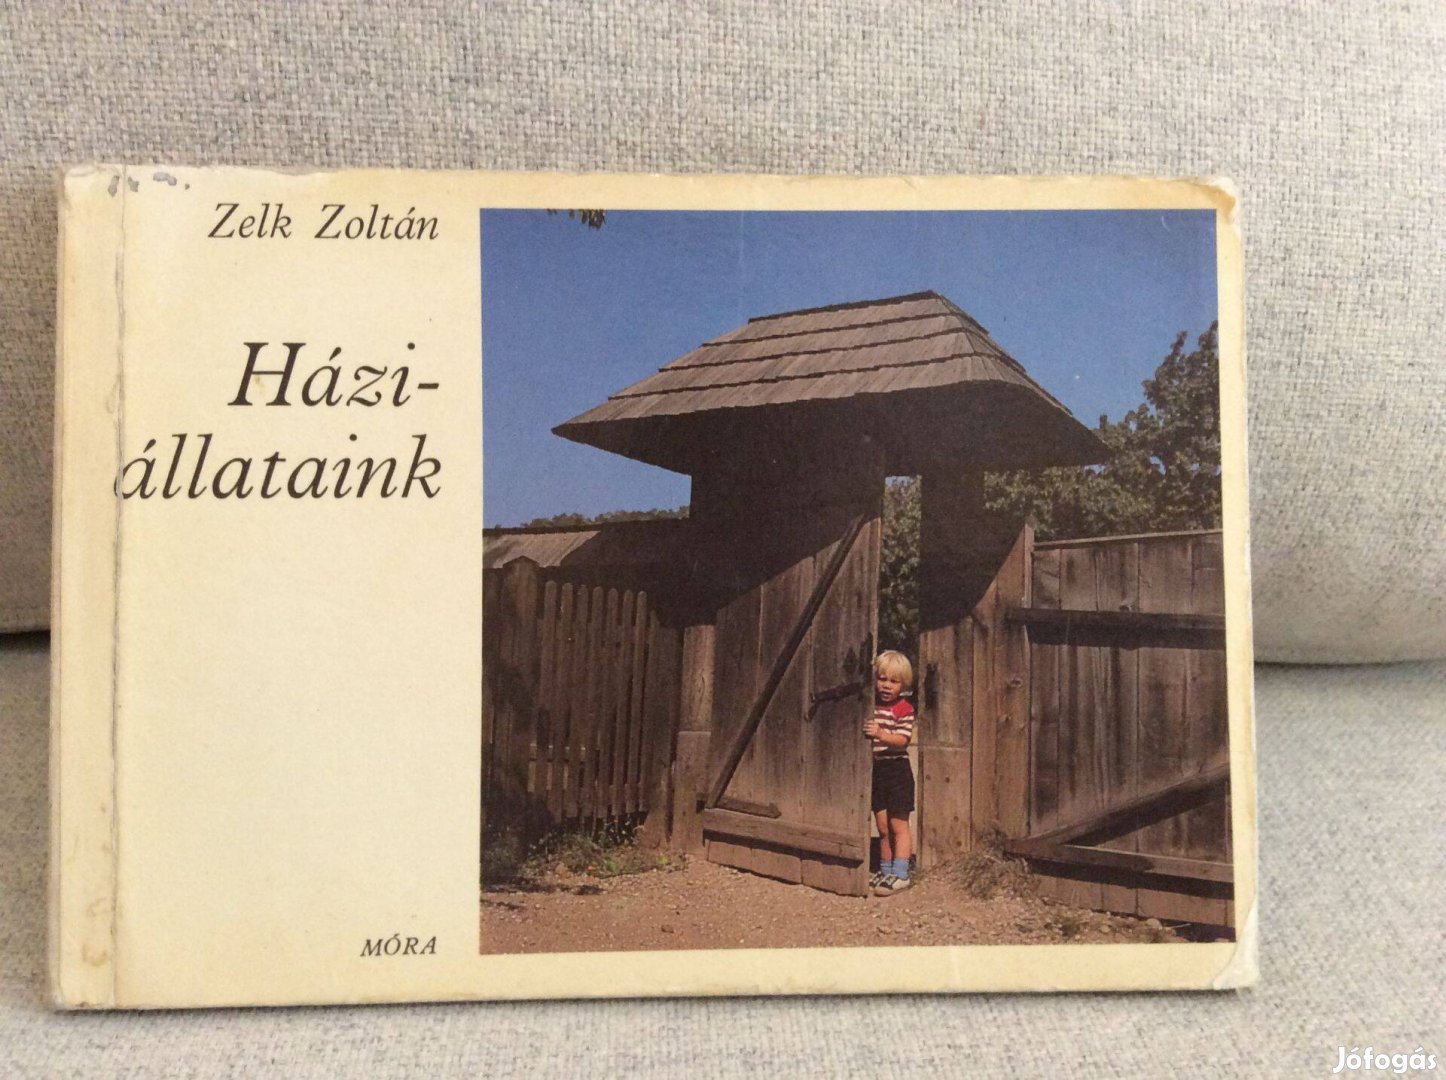 Zelk Zoltán Háziállataink leporelló könyv 1981 mese mesekönyv